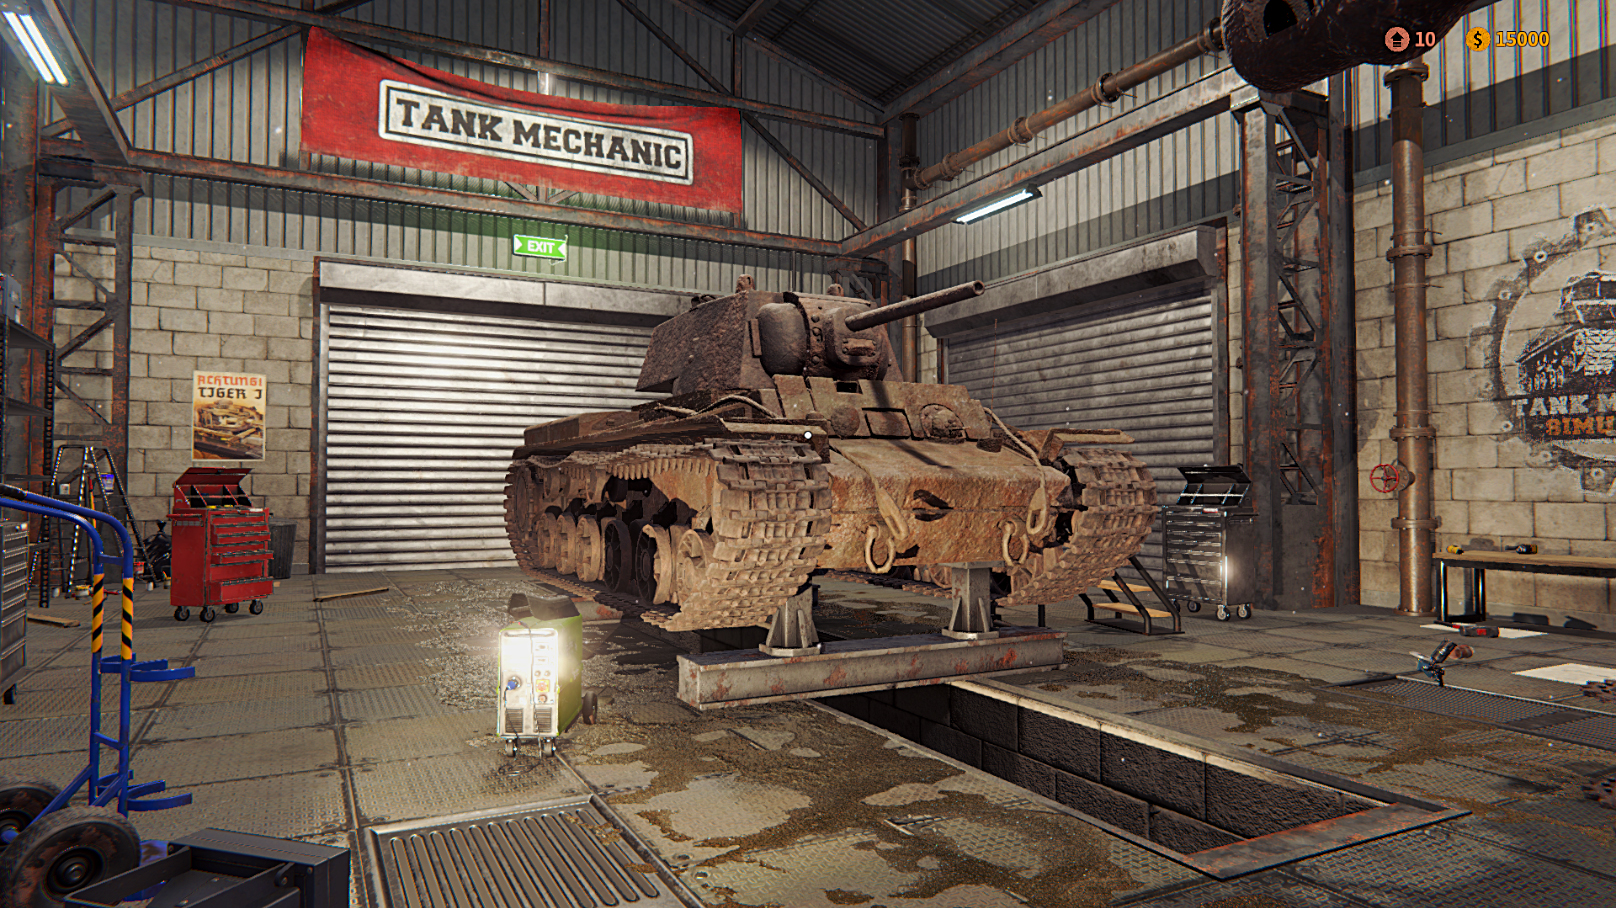 Tank mechanic simulator demo download